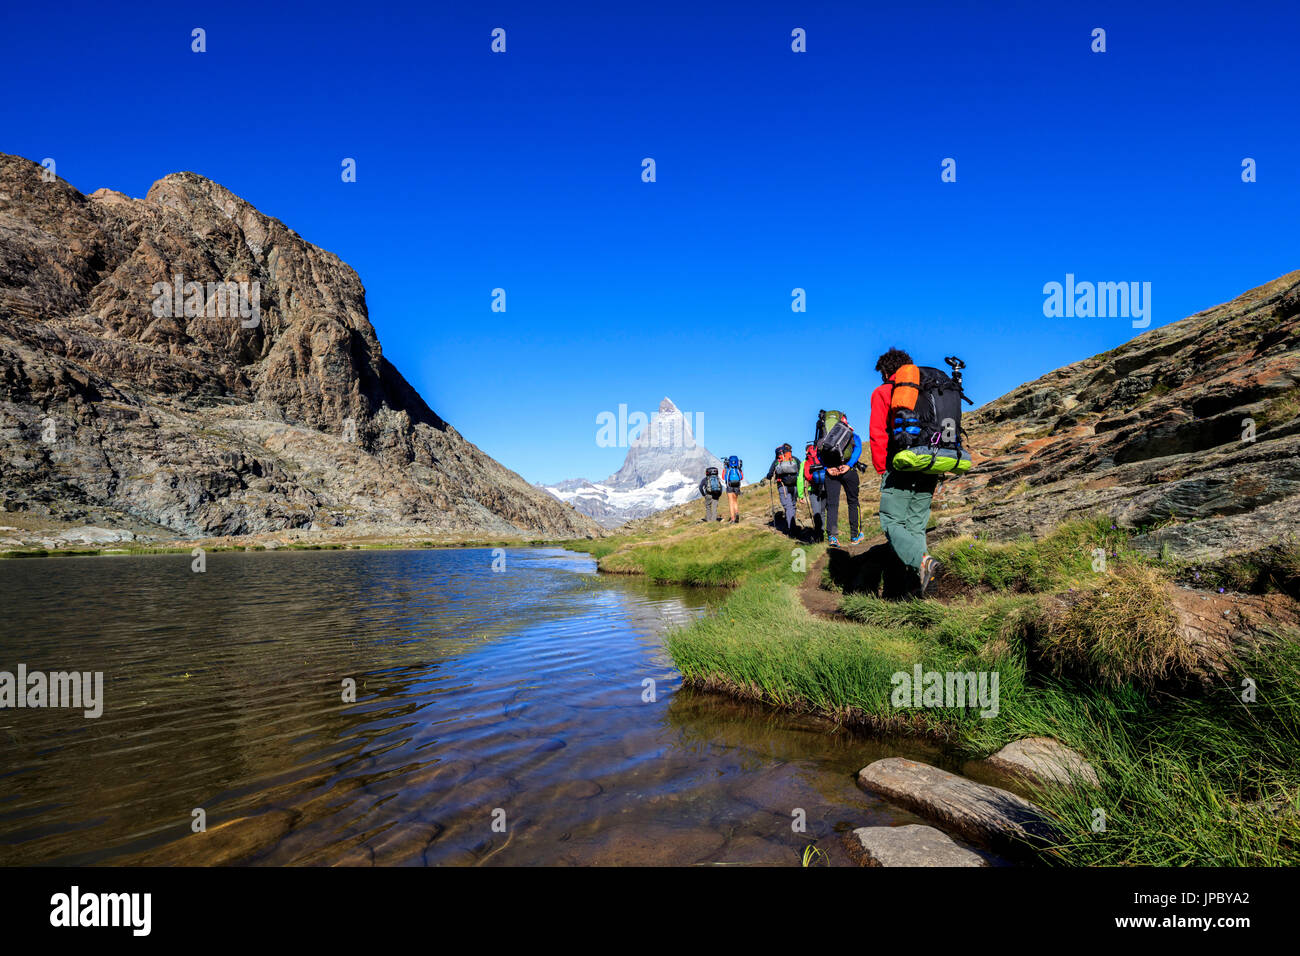 Les randonneurs passez sur la rive du lac Riffelsee avec en arrière-plan le Mont Cervin Zermatt Canton du Valais Suisse Europe Banque D'Images